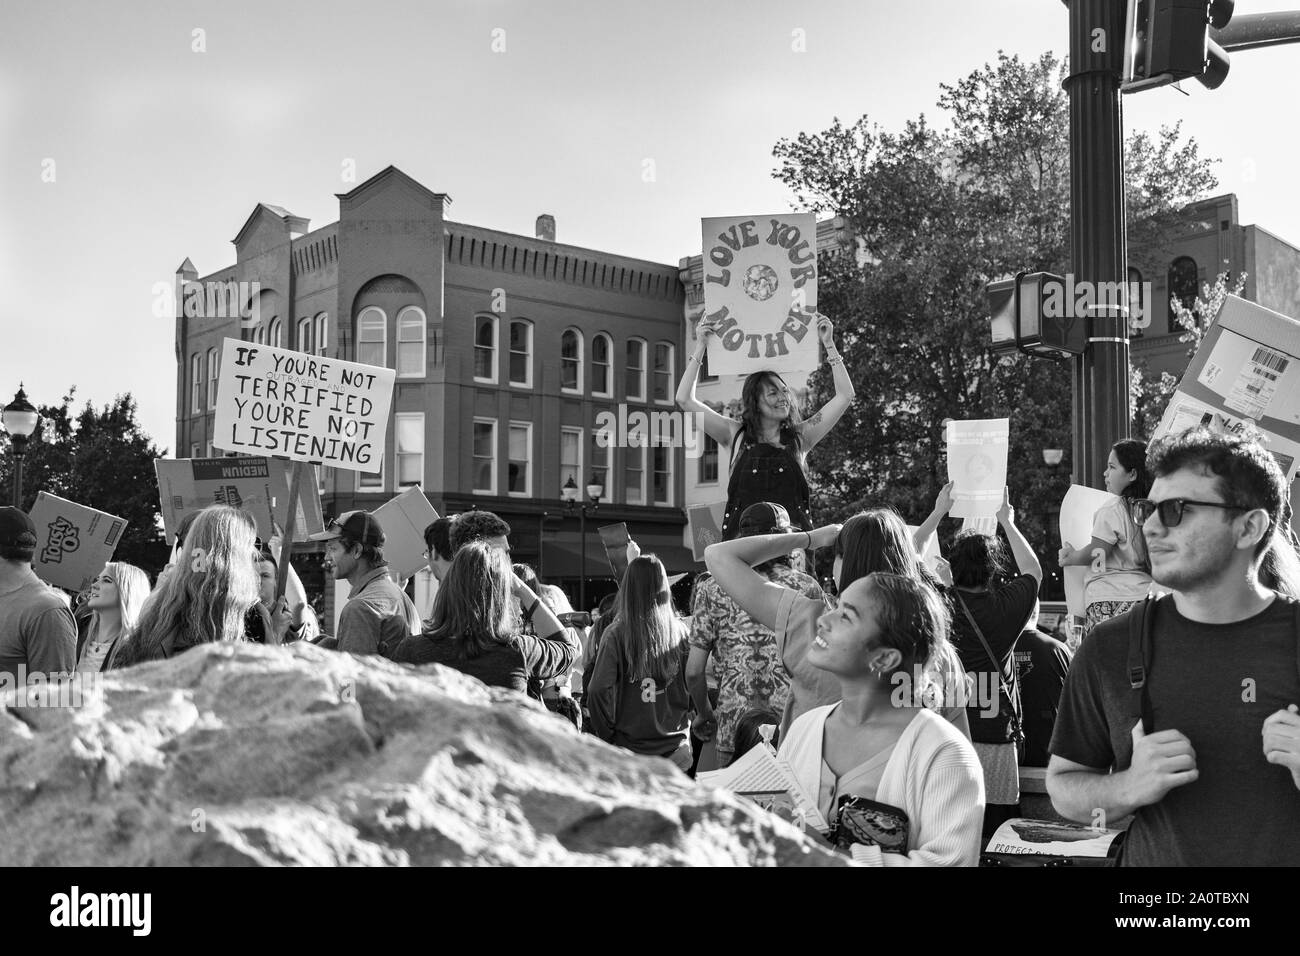 Eine Frau liest die Zeichen der Demonstranten auf internationaler Klimagerechtigkeit Rallye in Asheville, NC, USA Stockfoto